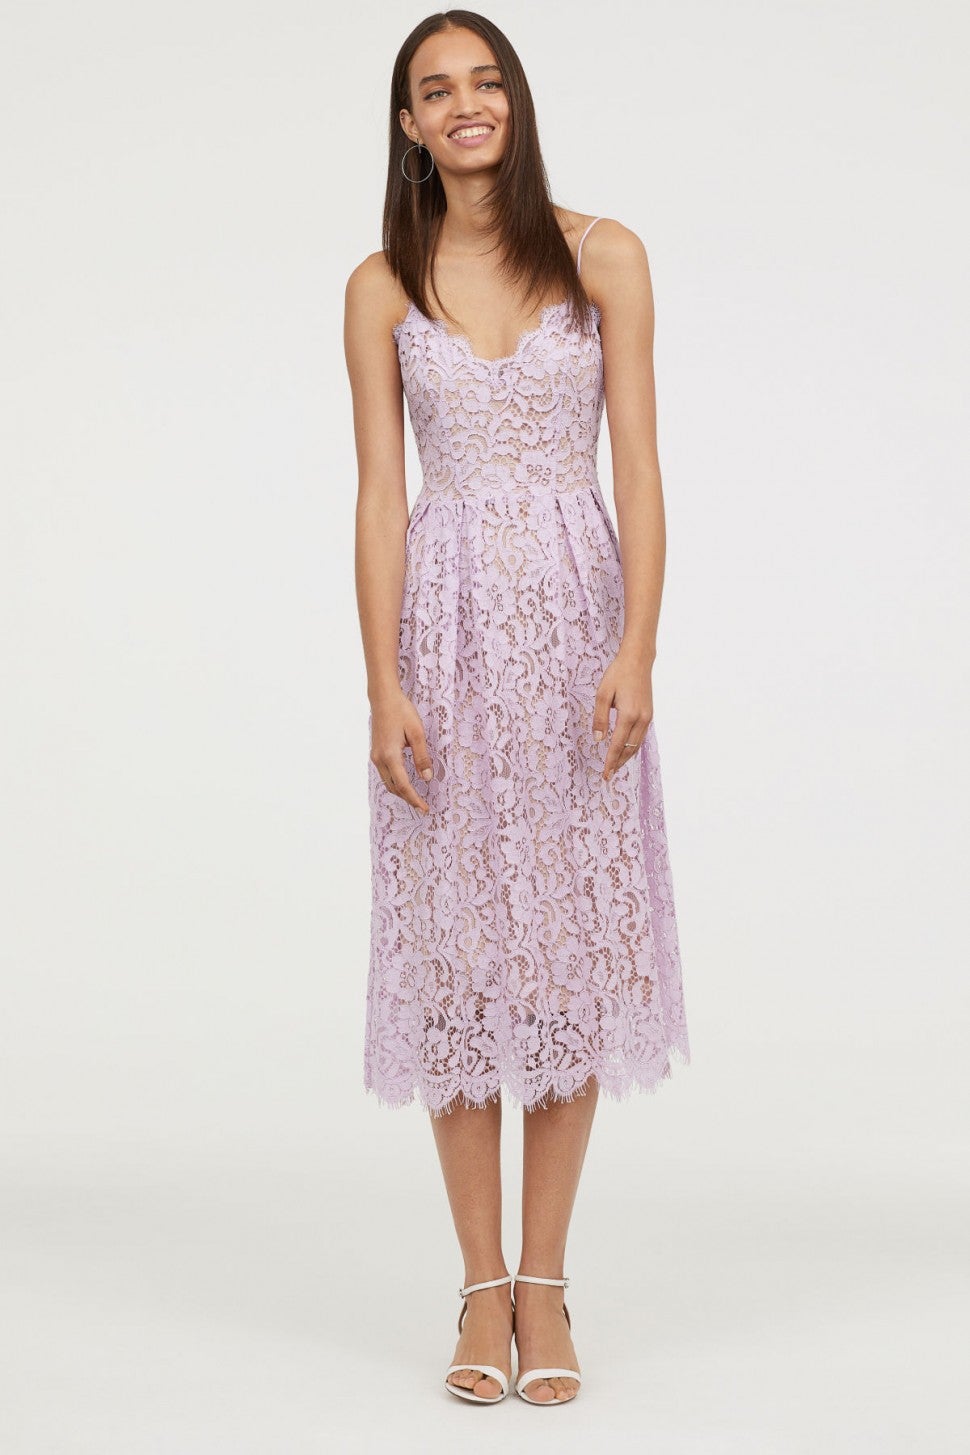 H&M lace dress